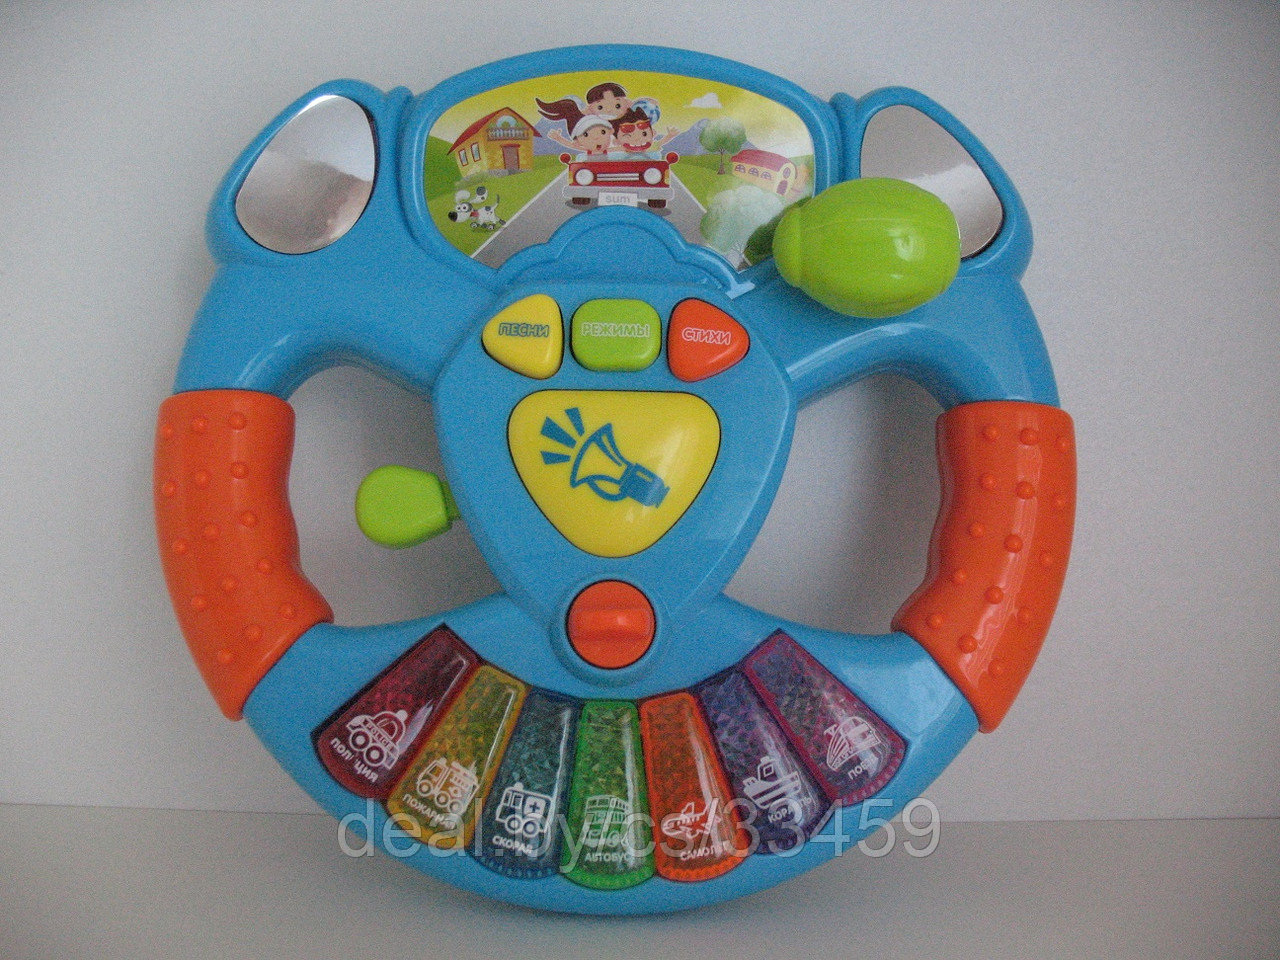 Развивающая игрушка «Музыкальный руль» Play smart. Для детей от 1 года., фото 1